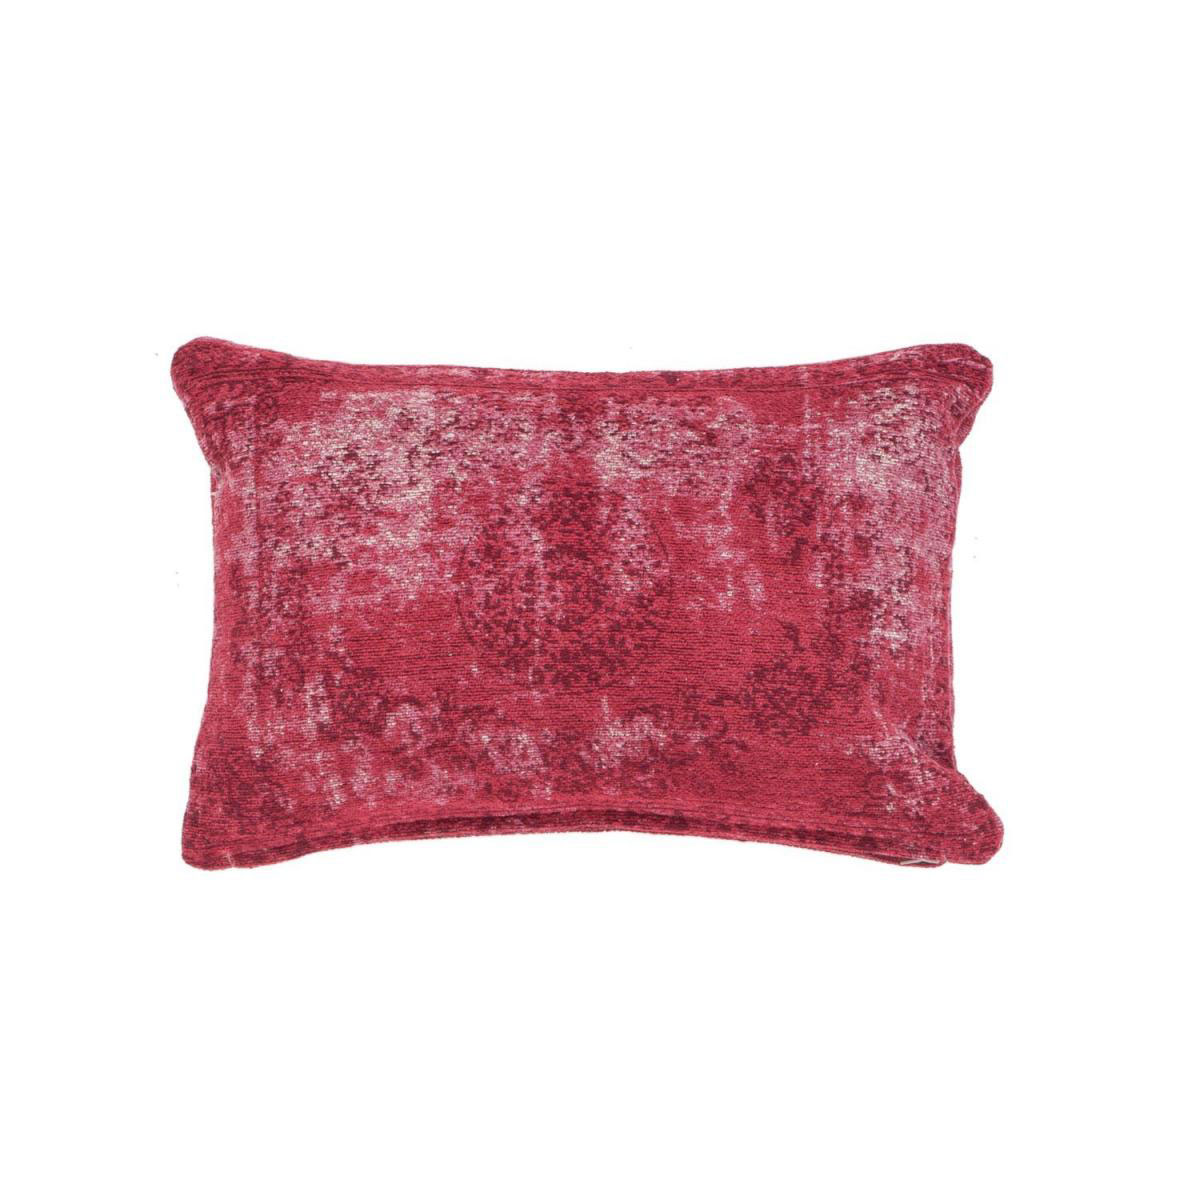 Vintage-Kissen „Nostalgia Pillow“ 385 Rot, 40x60cm